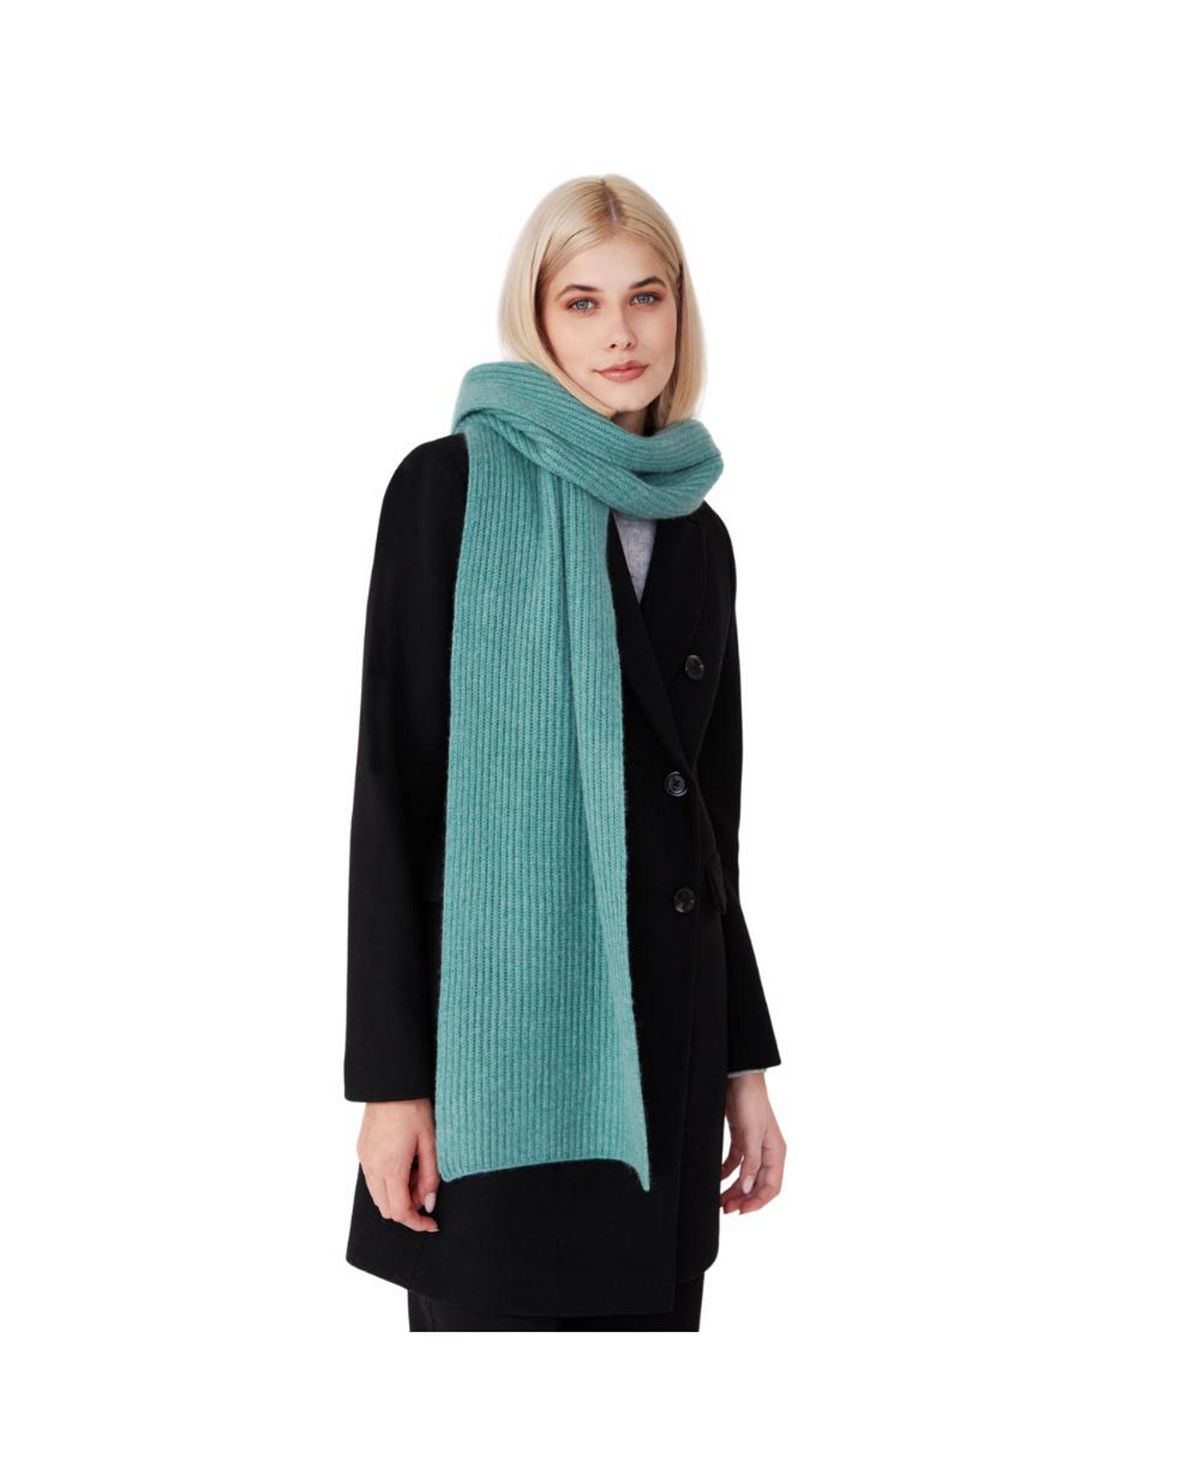 Женский шарф крупной вязки из кашемира премиум-класса Style Republic